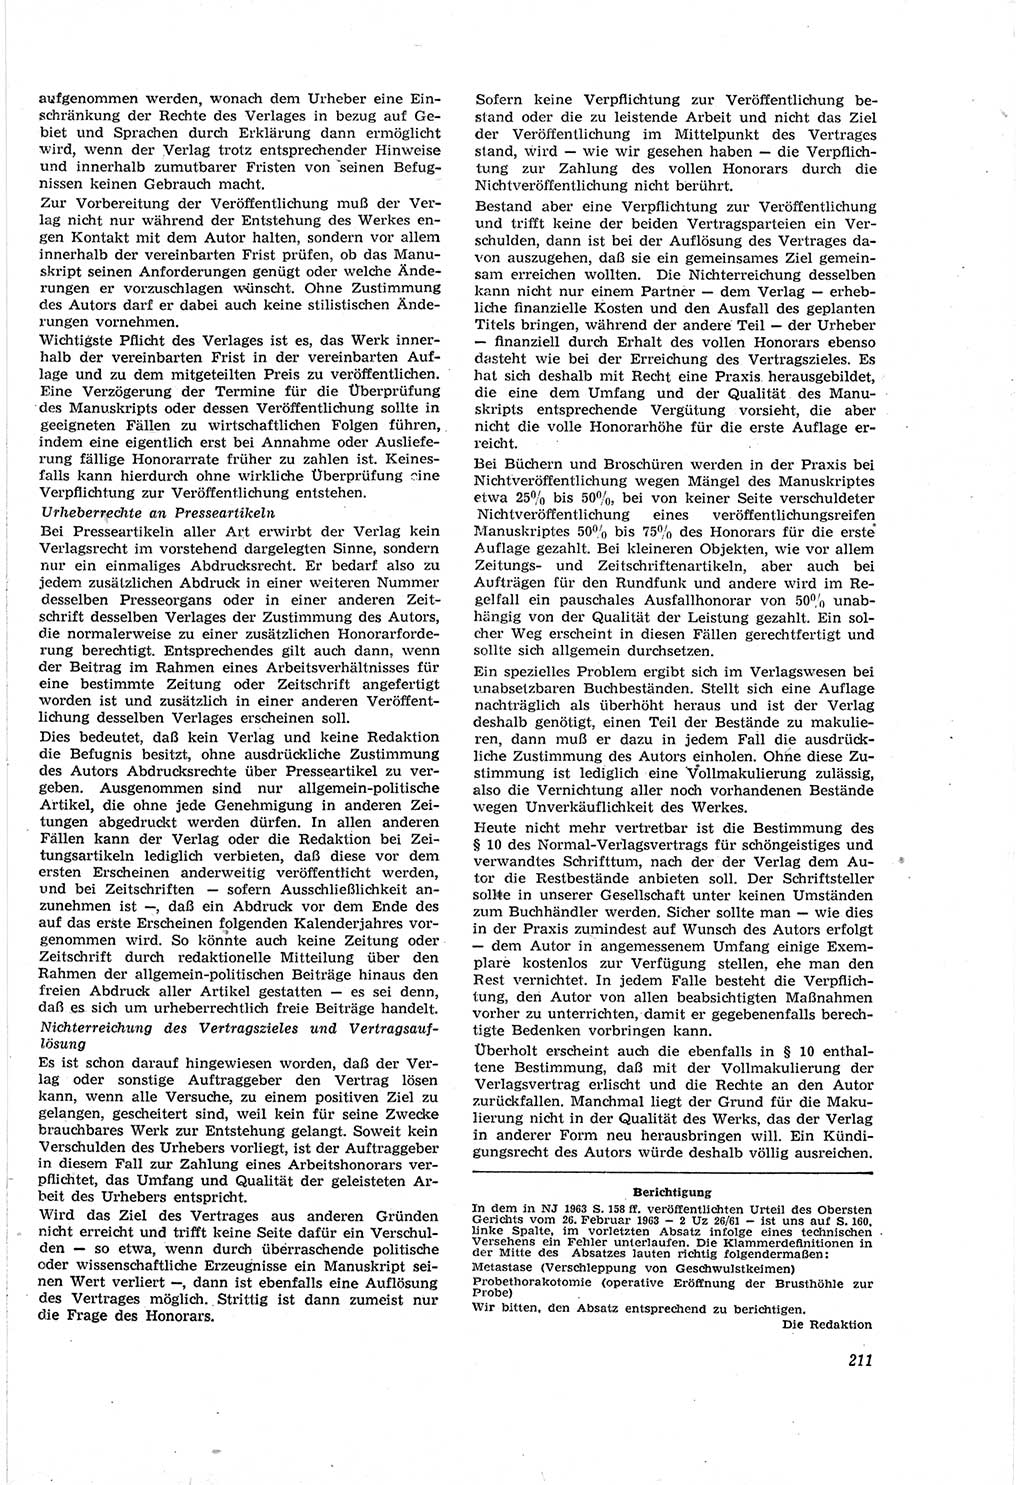 Neue Justiz (NJ), Zeitschrift für Recht und Rechtswissenschaft [Deutsche Demokratische Republik (DDR)], 18. Jahrgang 1964, Seite 211 (NJ DDR 1964, S. 211)